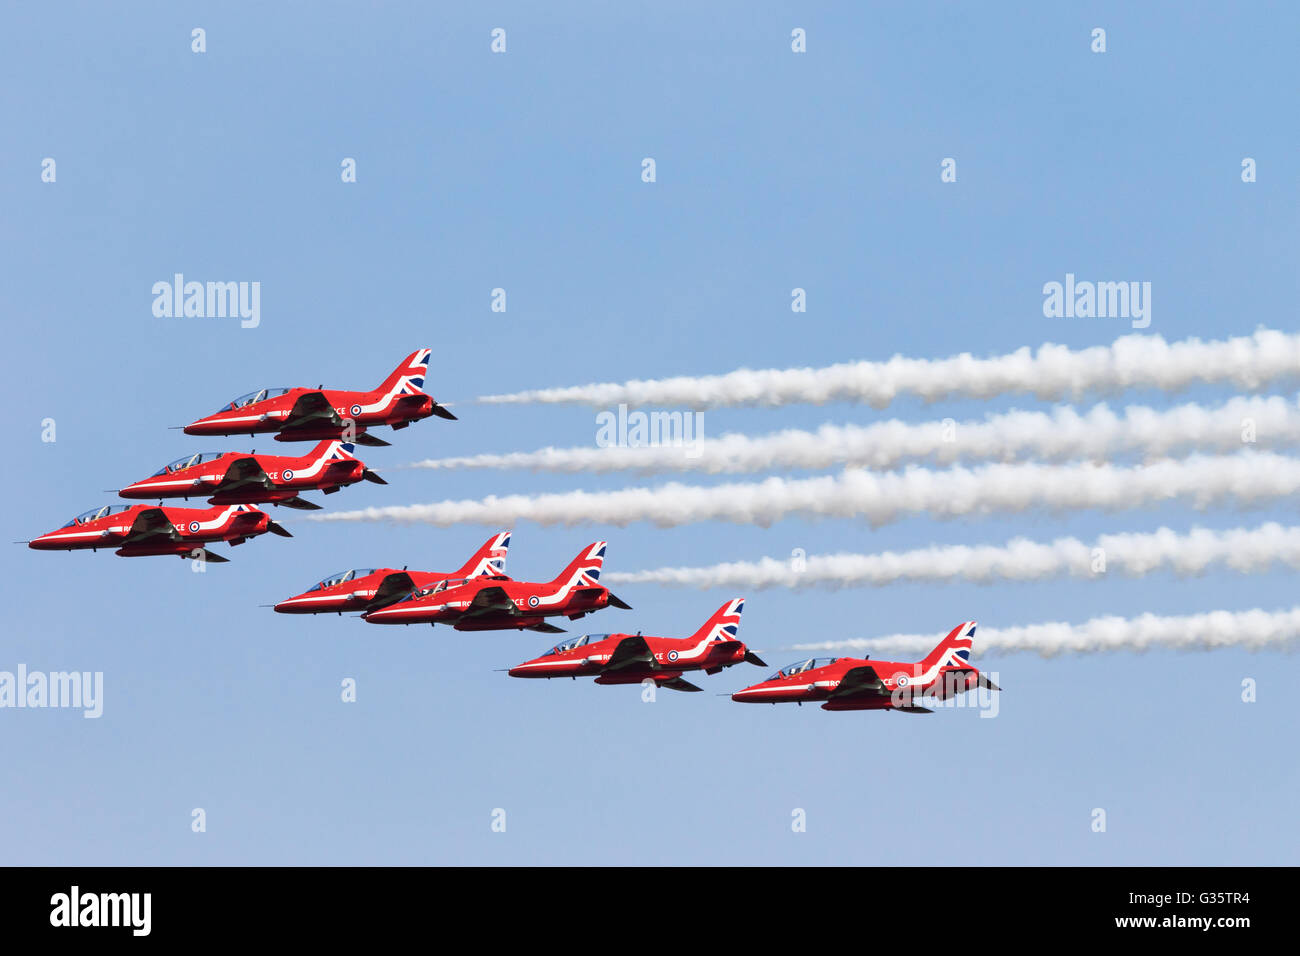 Sept membres de la RAF flèches rouge l'équipe de démonstration de voltige volant en formation avec la fumée, Duxford Duxford meeting aérien américain, UK Banque D'Images